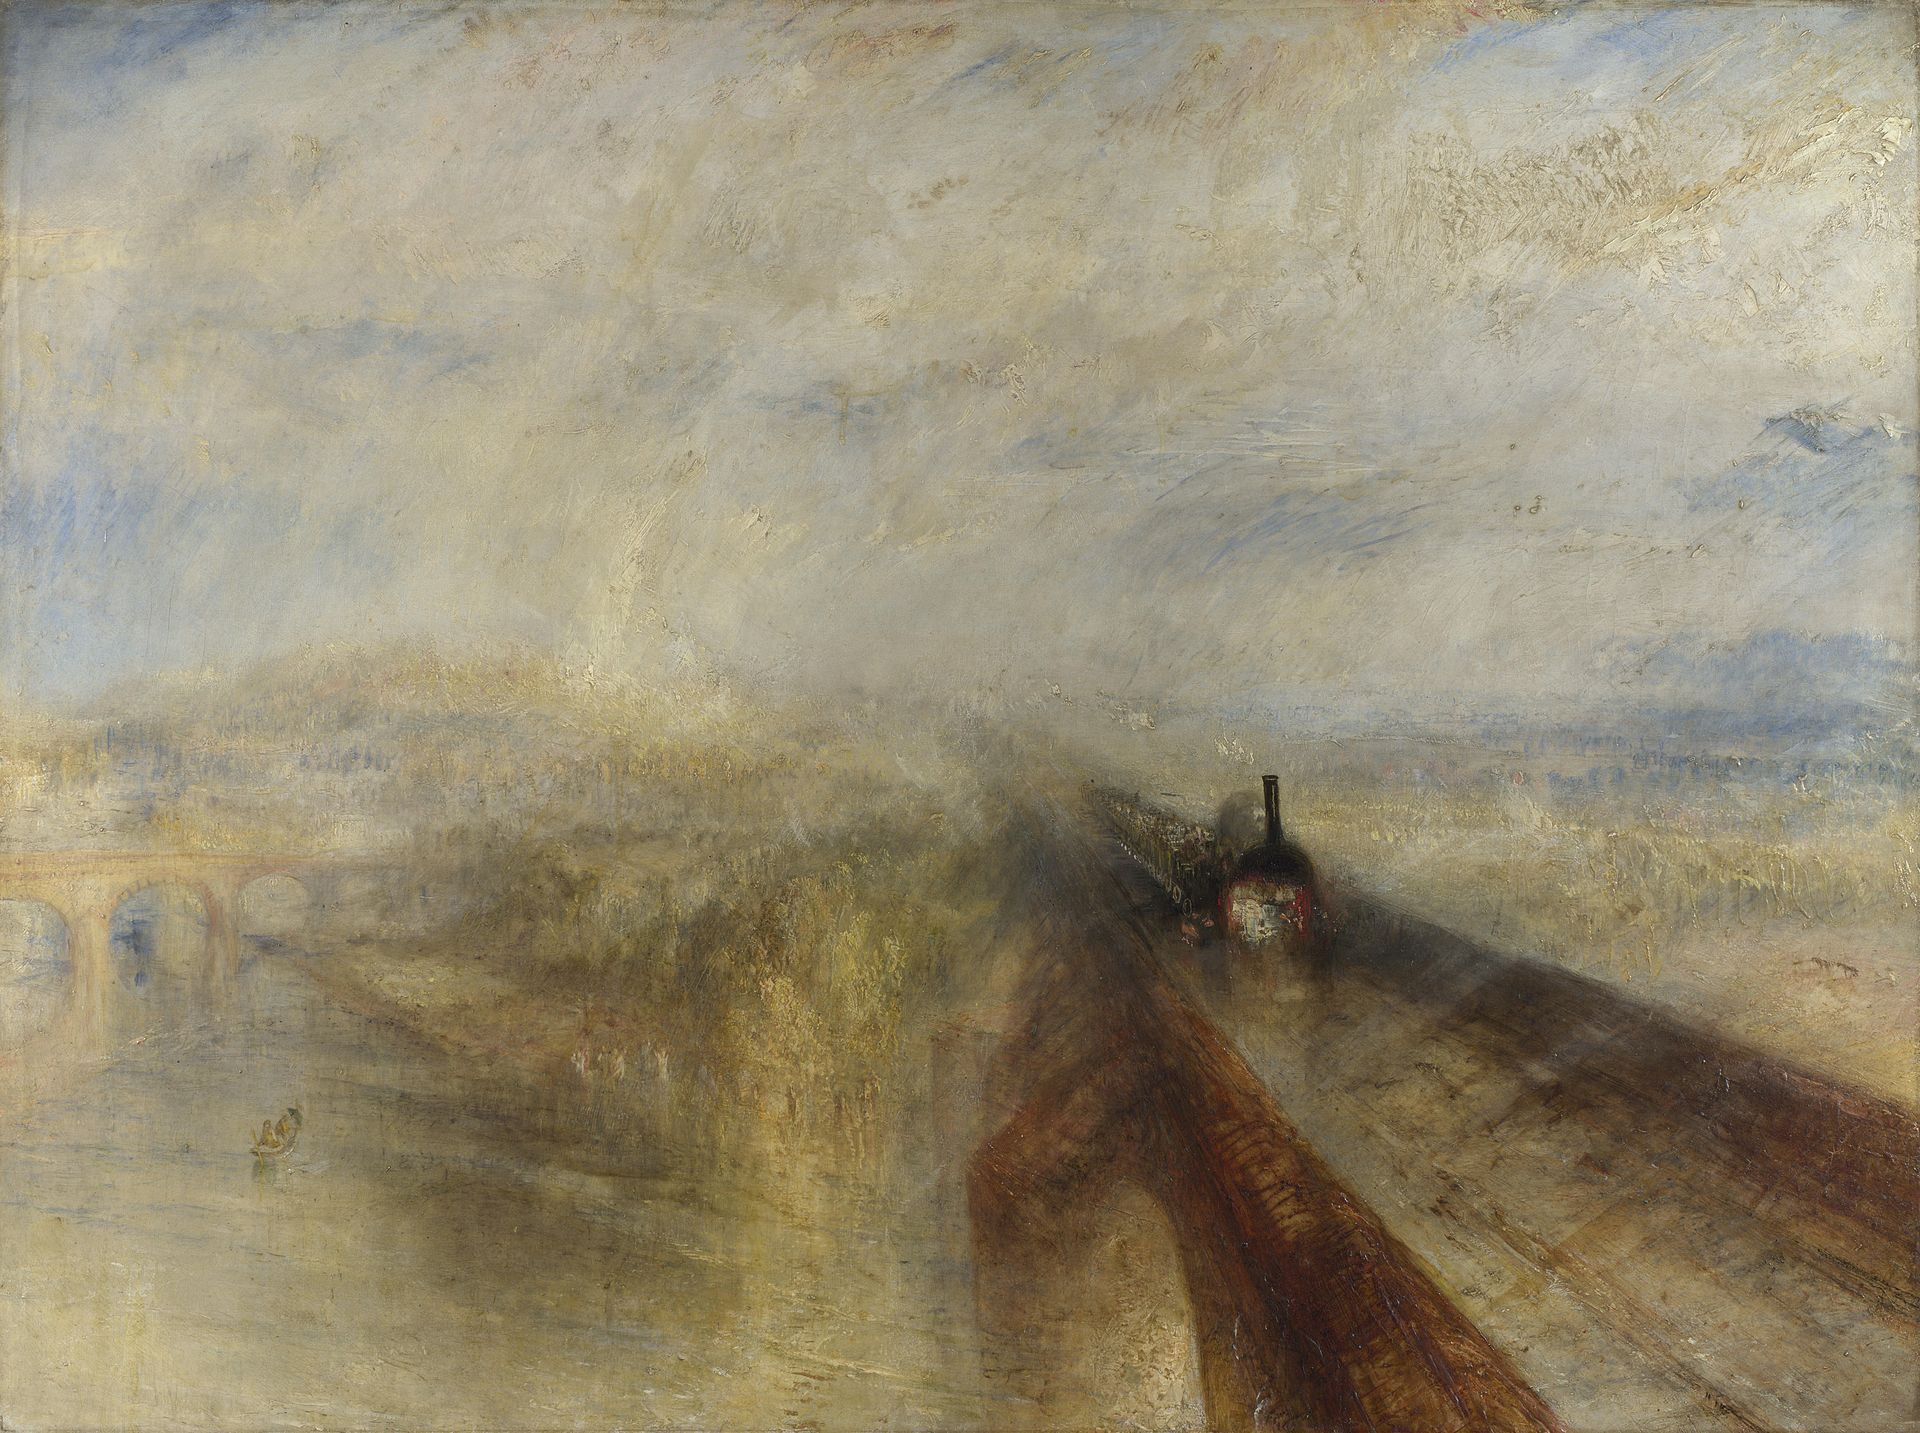 Yağmur, Buhar ve Hız - Büyük Batı Demiryolu by Joseph Mallord William Turner - 1844 - 91 x 121.8 cm 